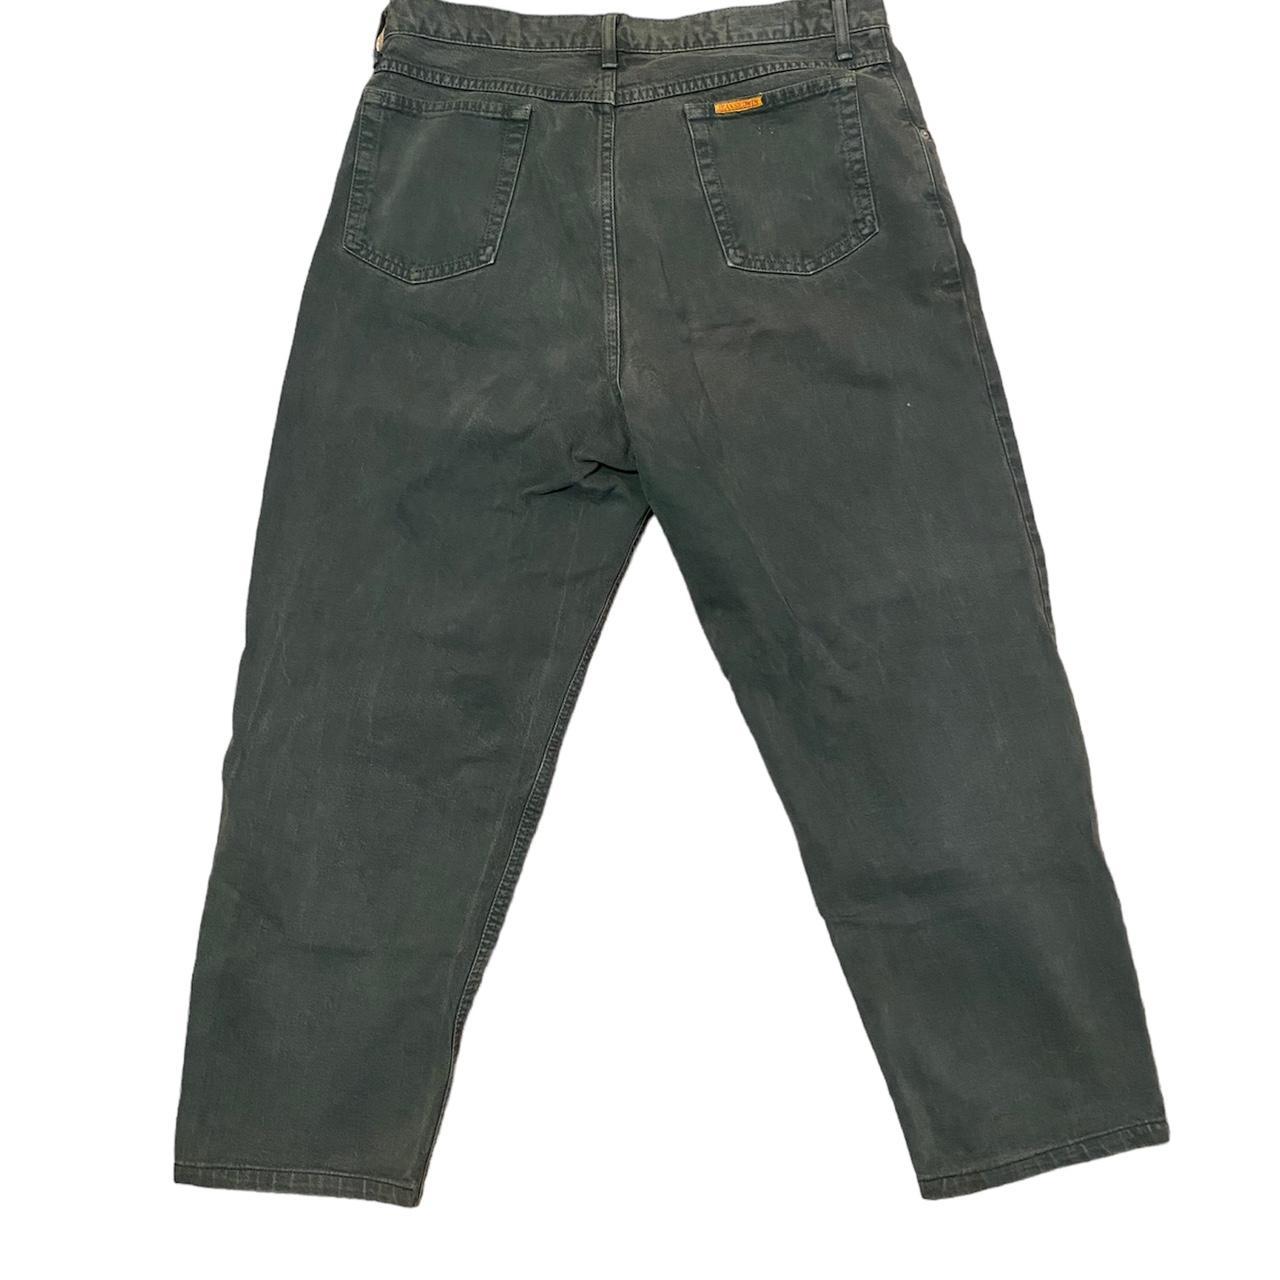 Vintage Japanese Wide fit Denim jeans in green... - Depop